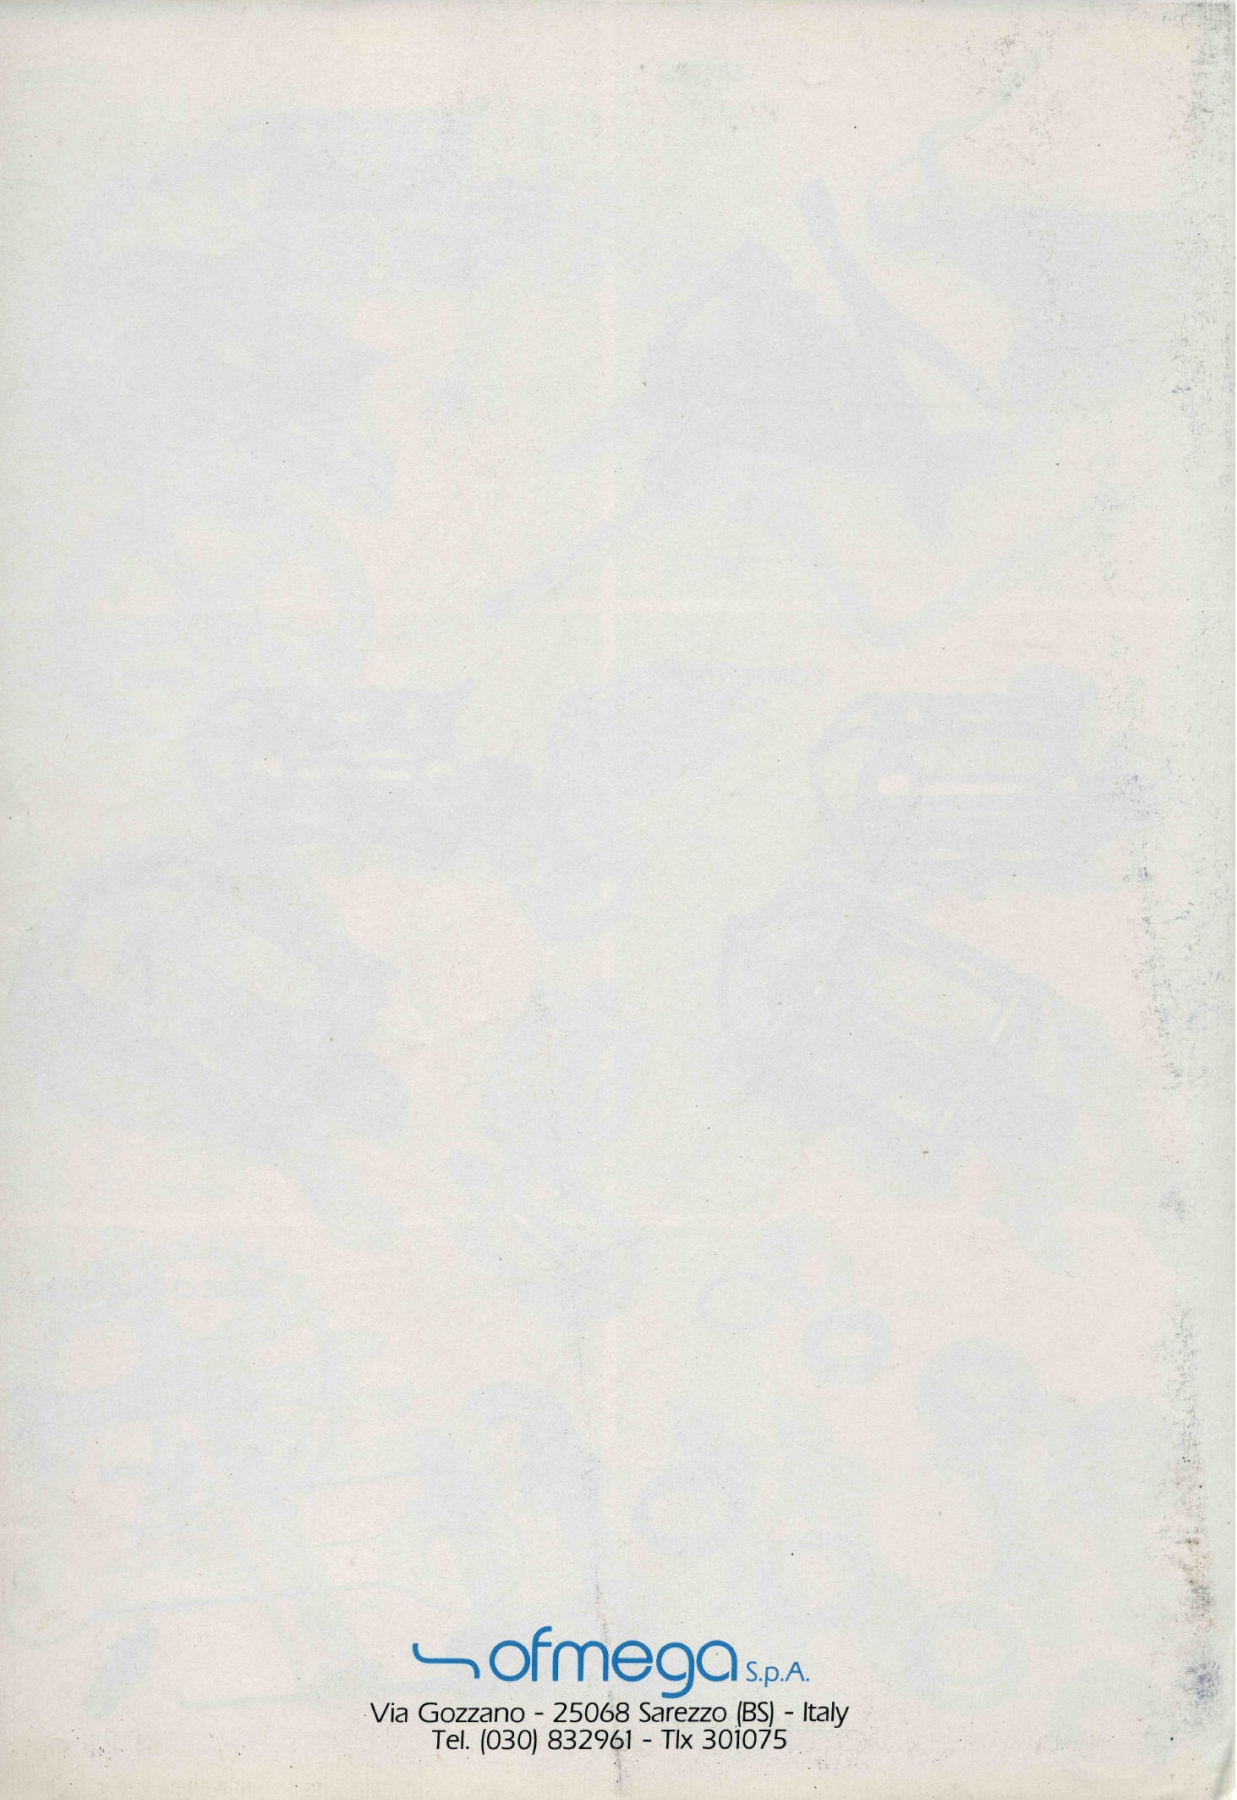 OFMEGA catalog (1983)